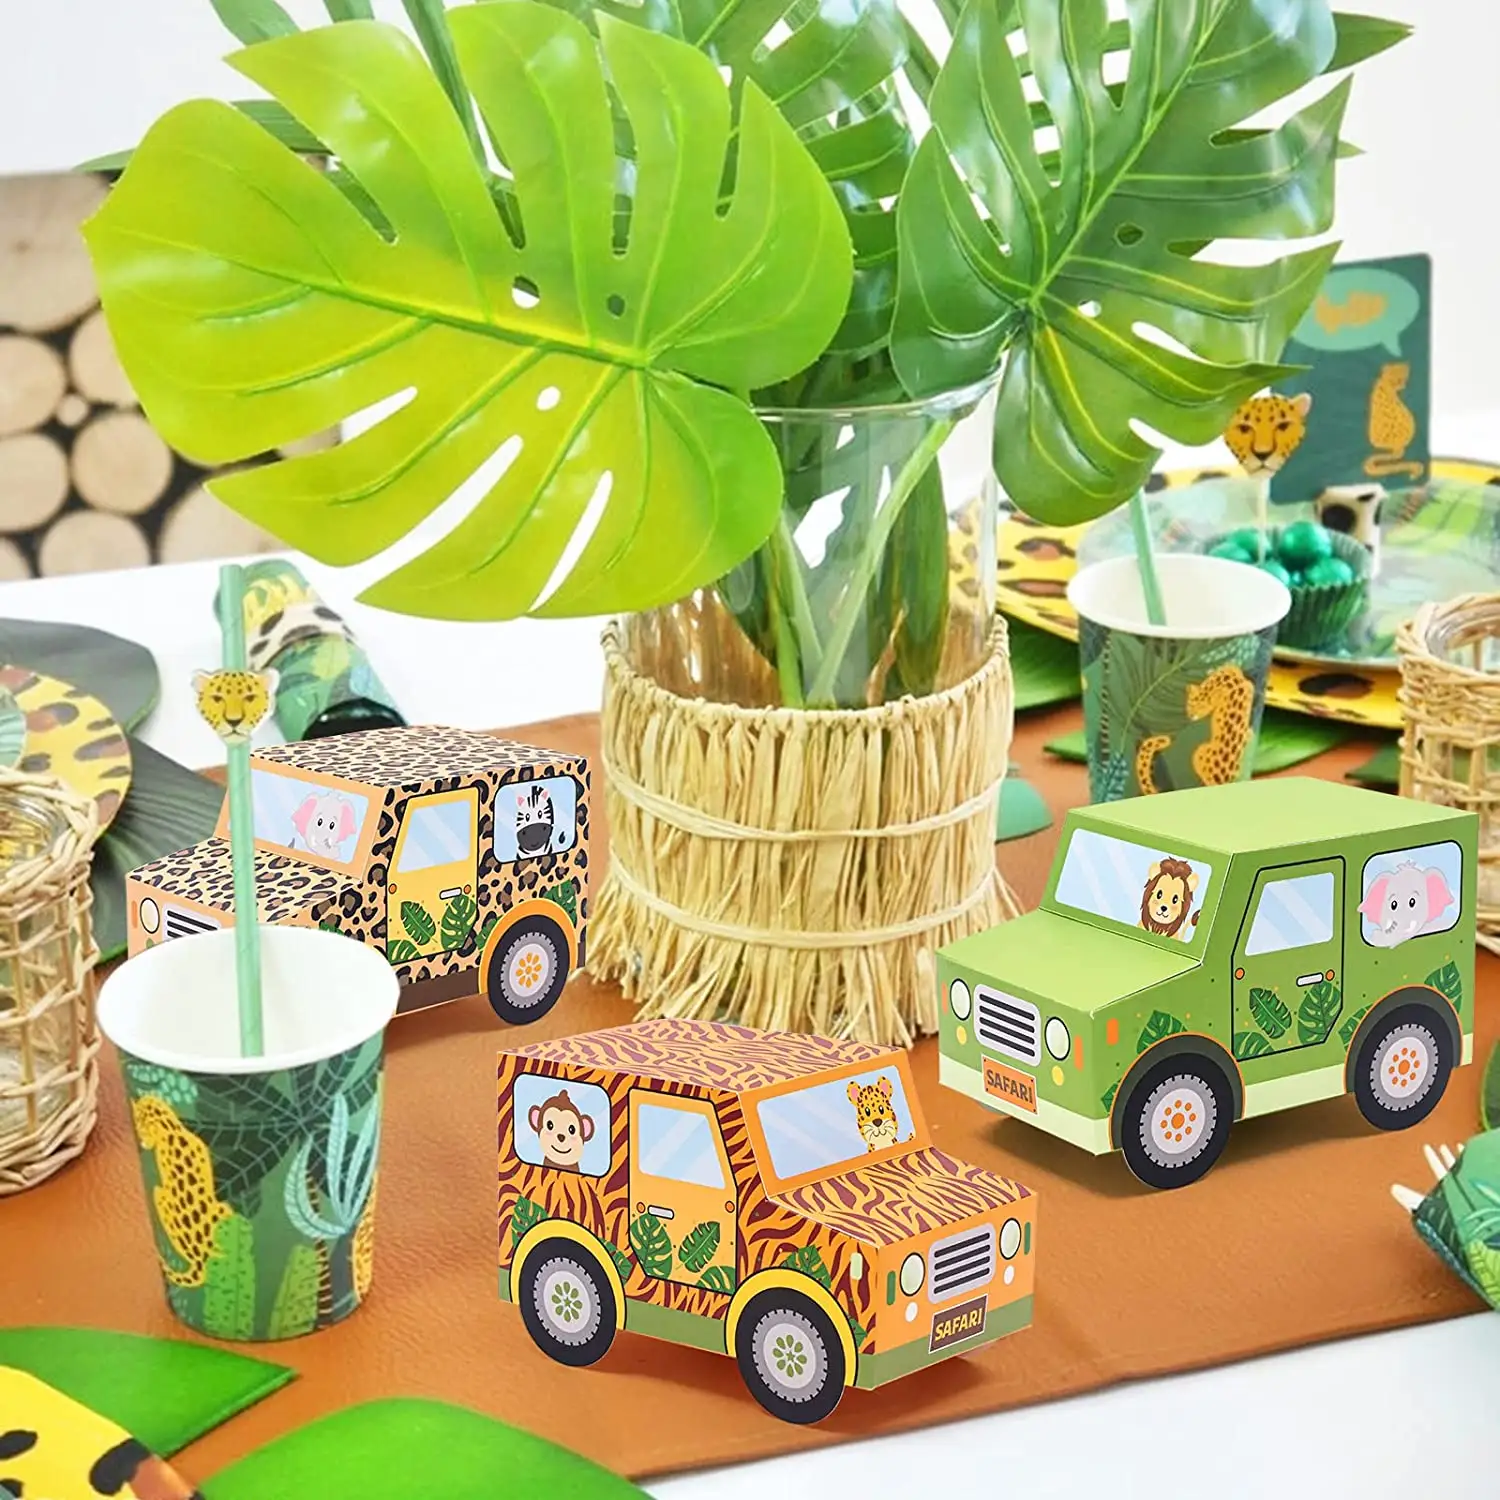 Nicro-Cajas de Regalo para dulces de animales de la selva, caja de regalo de papel de diseño para pastel en forma de coche para niños, suministros de fiesta de cumpleaños, recuerdo, novedad